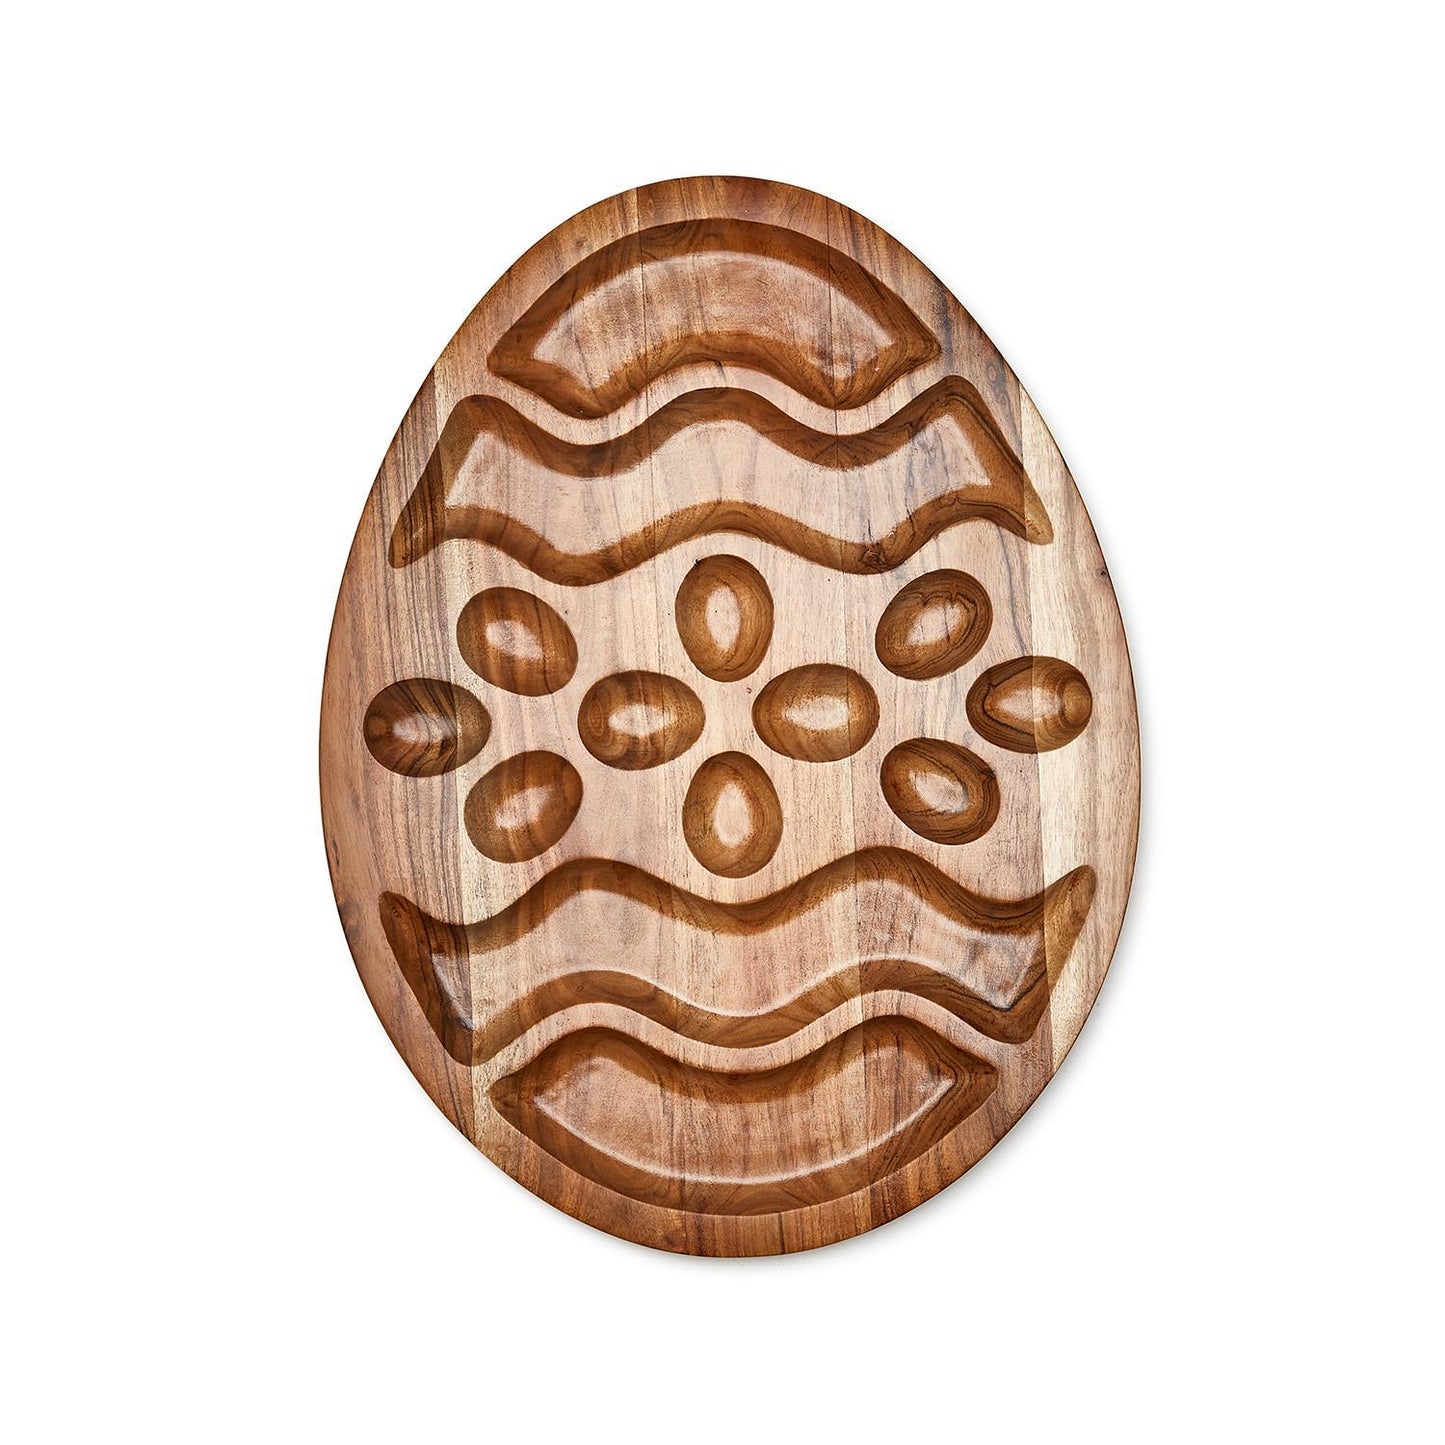 Eggs-traordinary Charcuterie Board